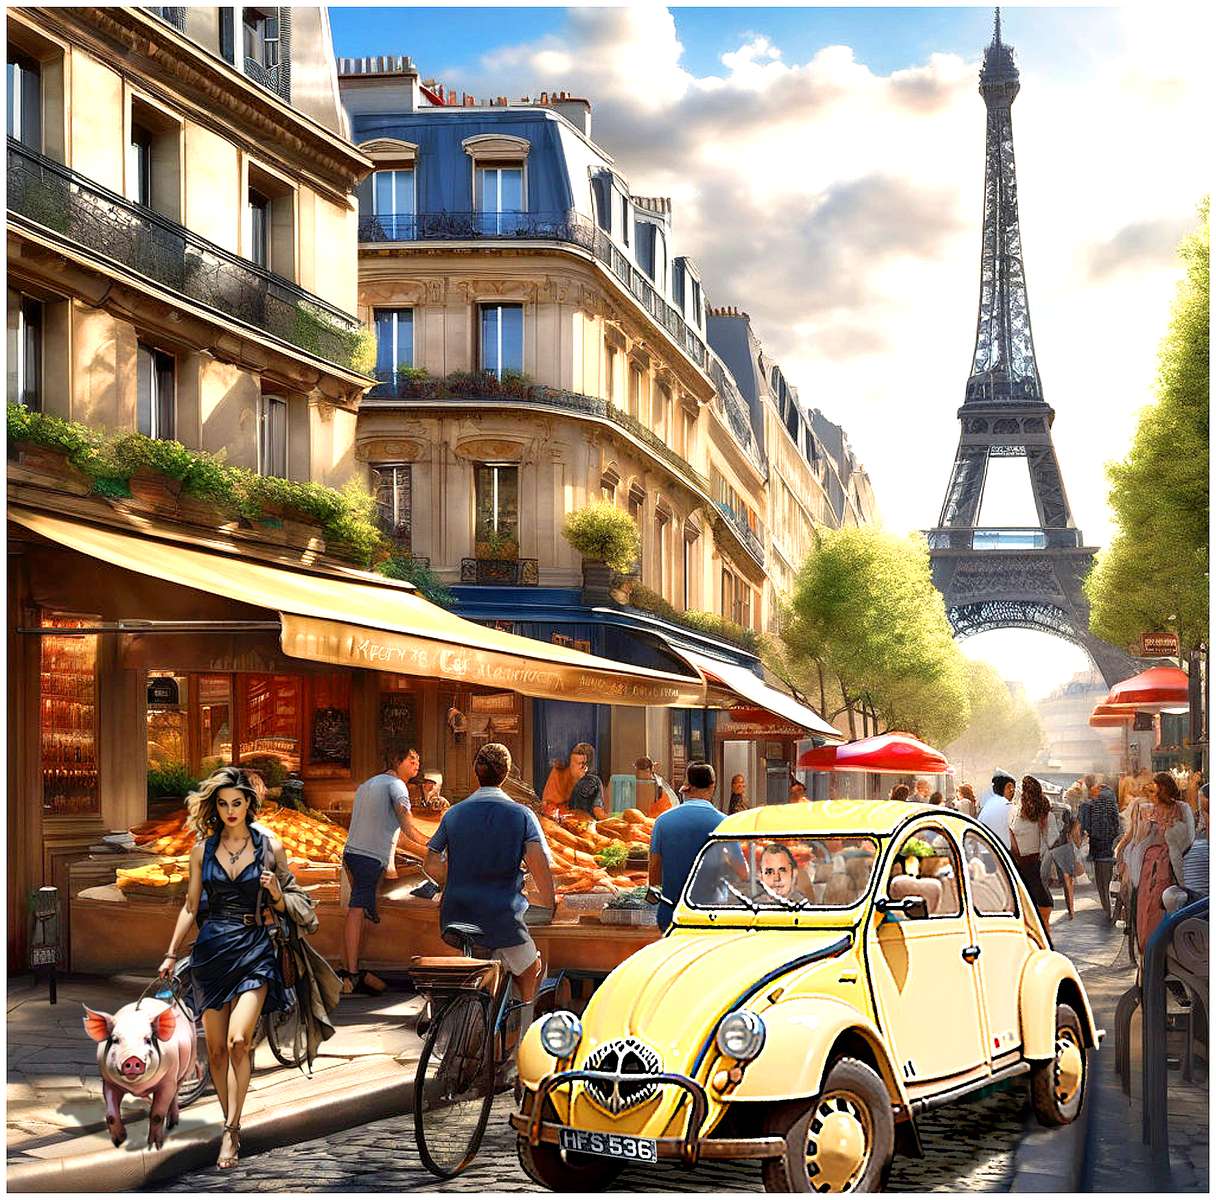 Παρίσι, η πόλη όπου τα πάντα πάνε - και συχνά πάνε παζλ online